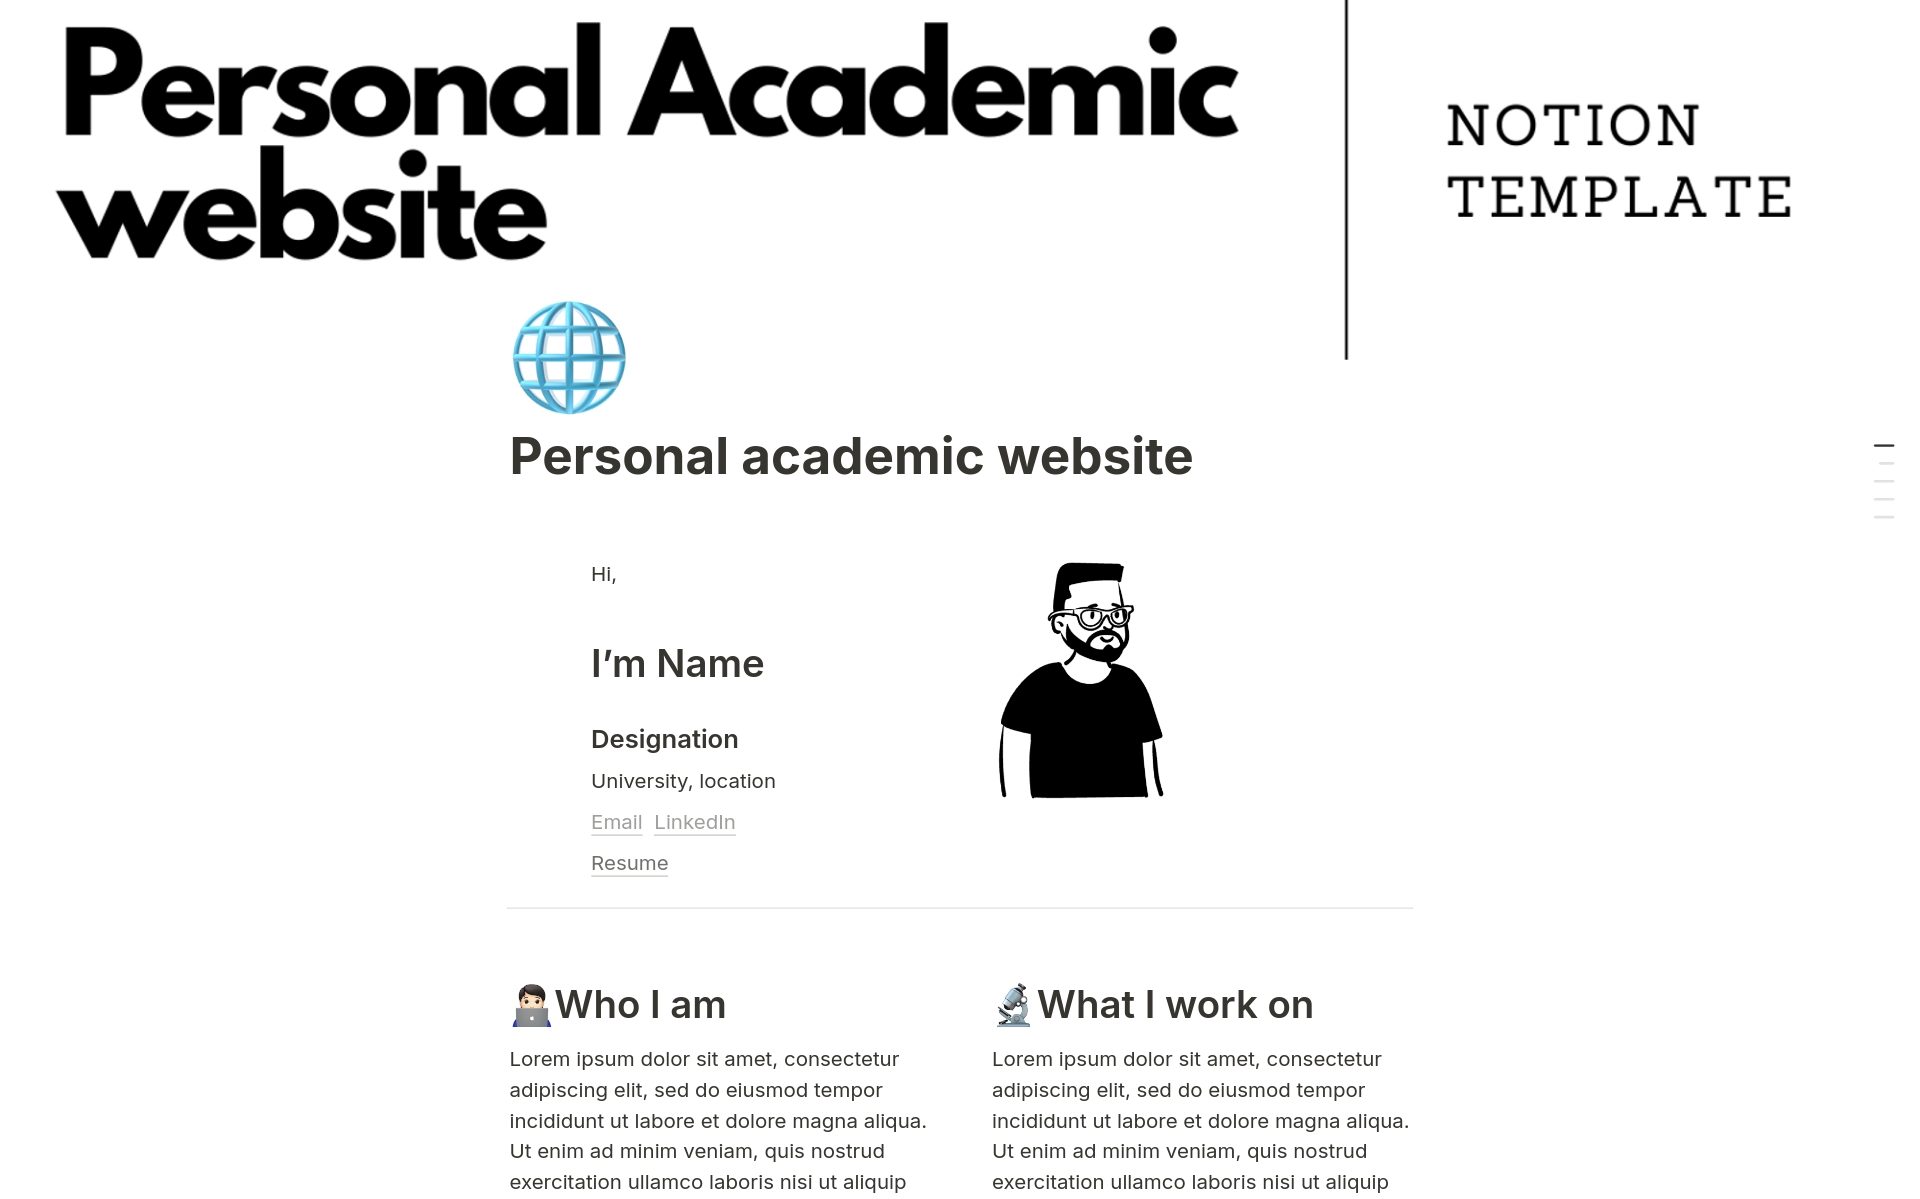 Personal academic websiteのテンプレートのプレビュー